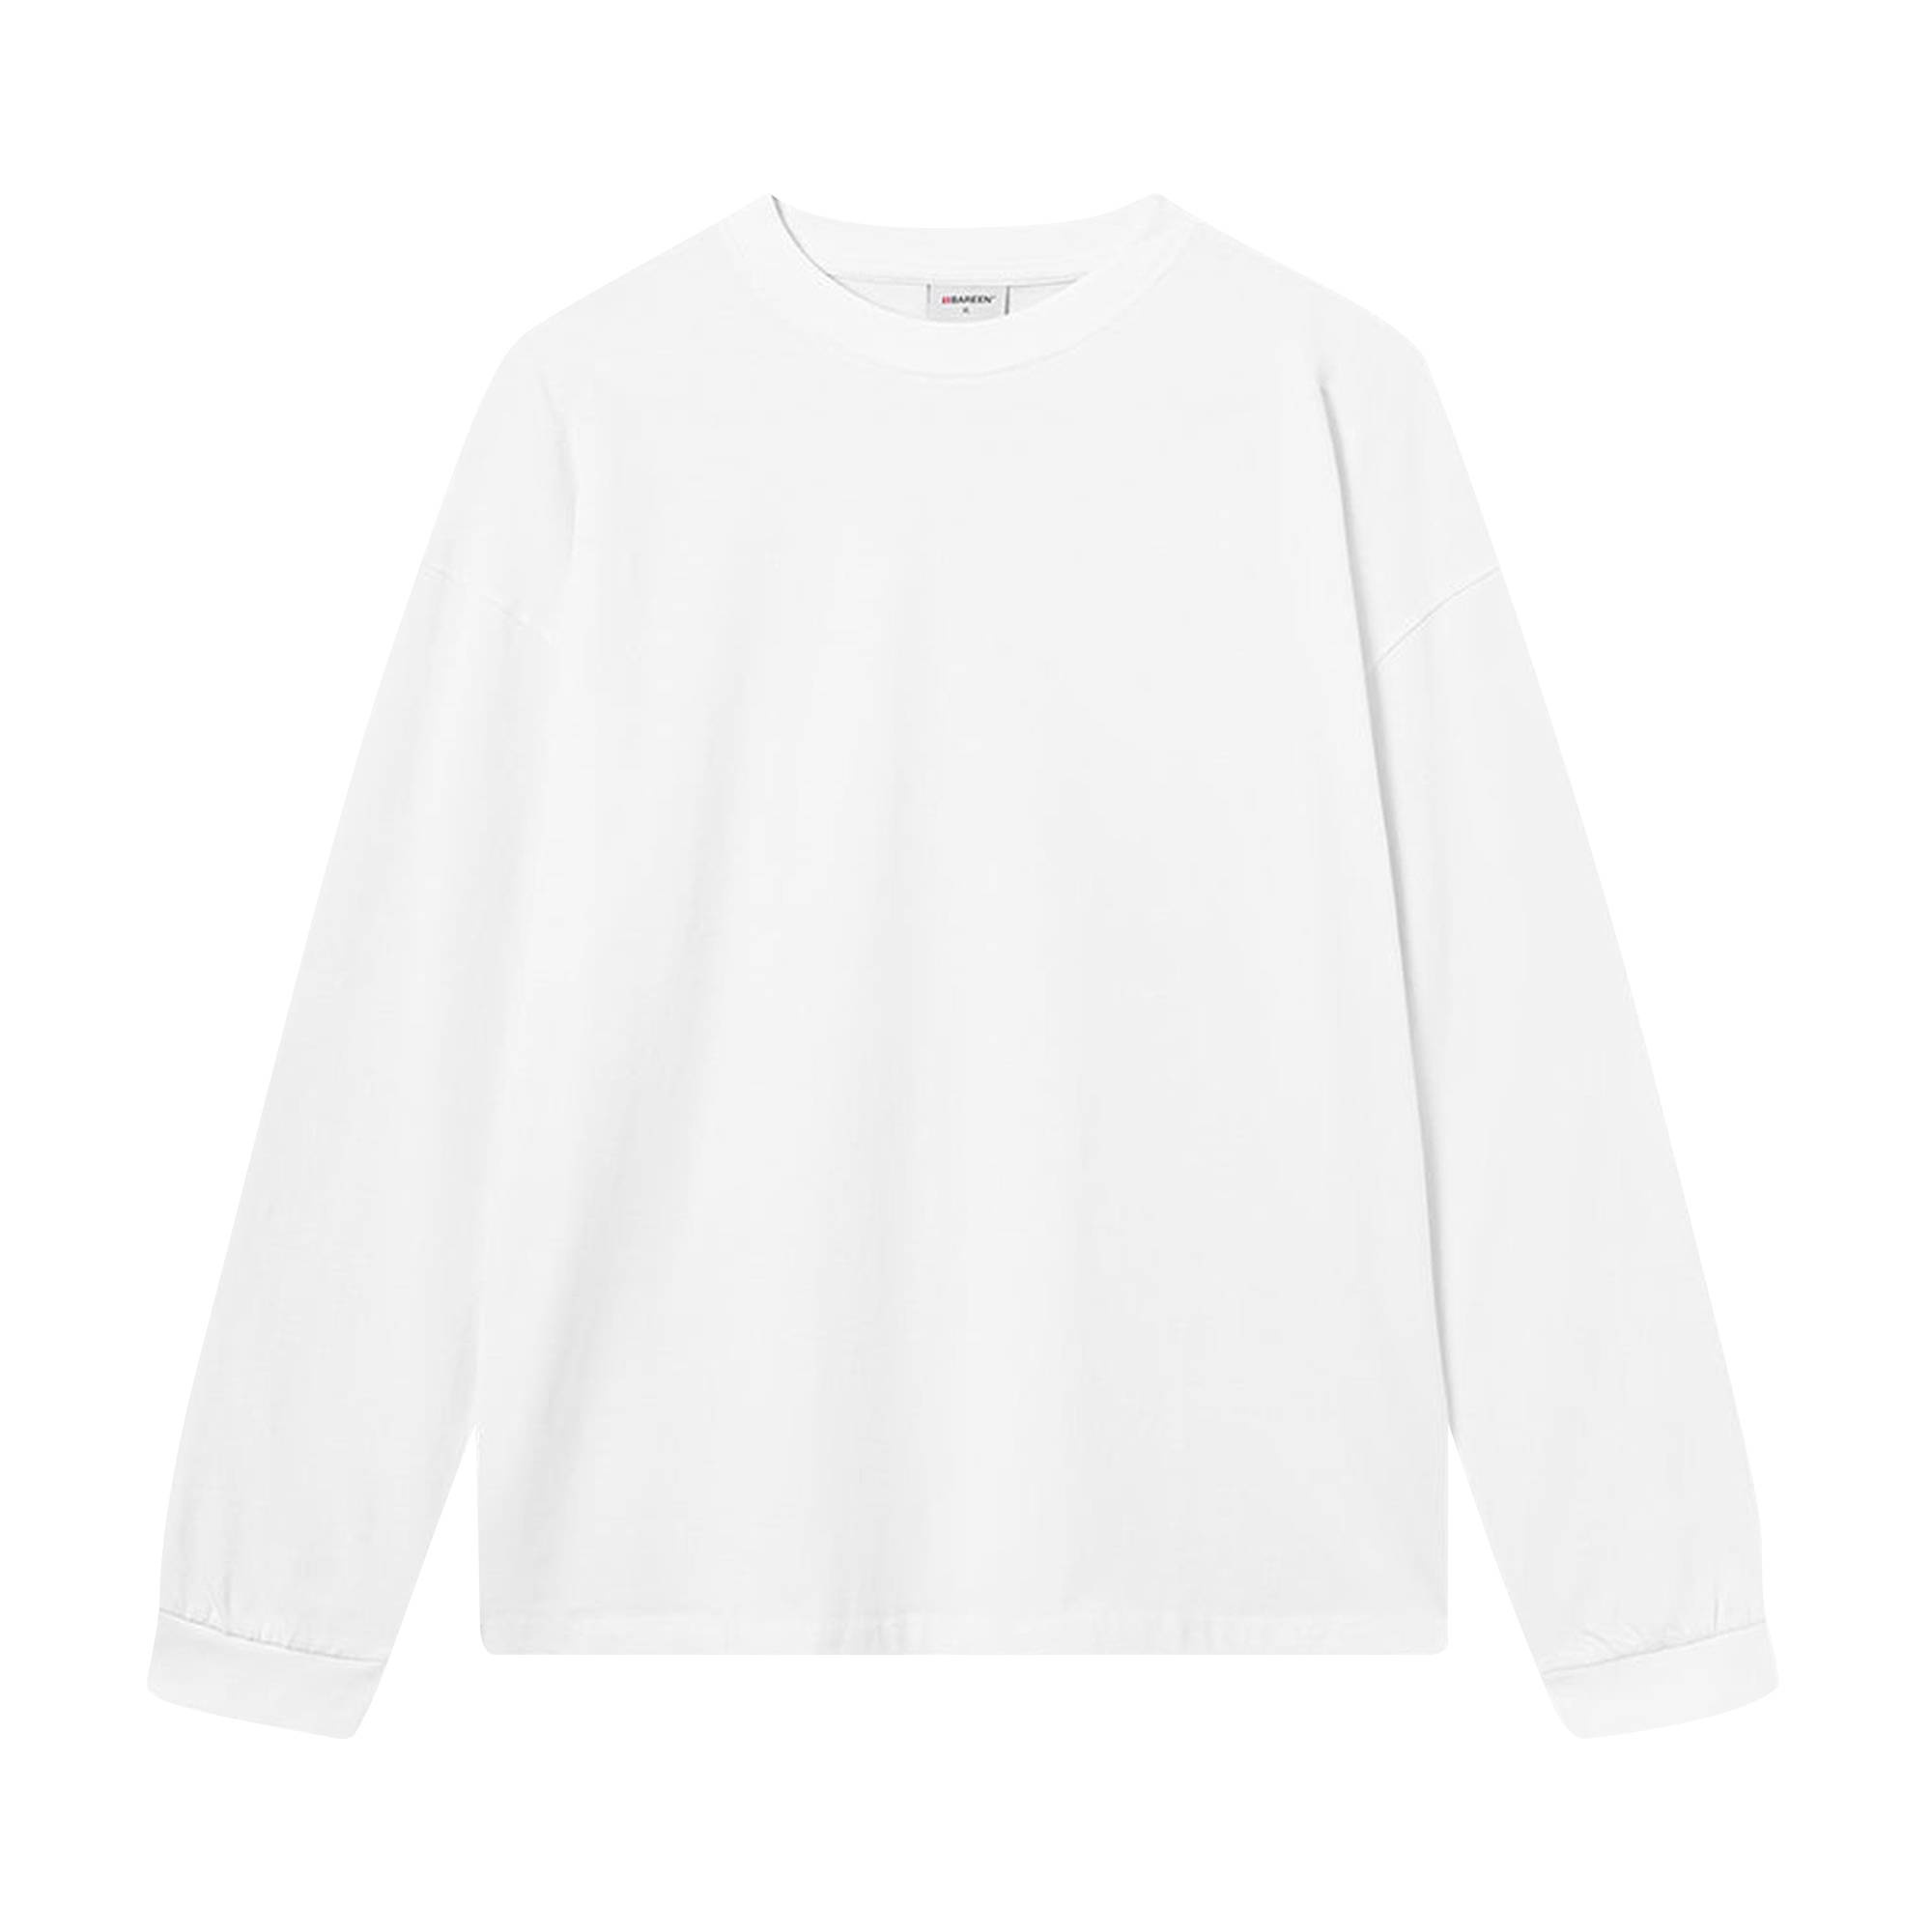 Acronym Long-Sleeve T-Shirt 'White' - 1